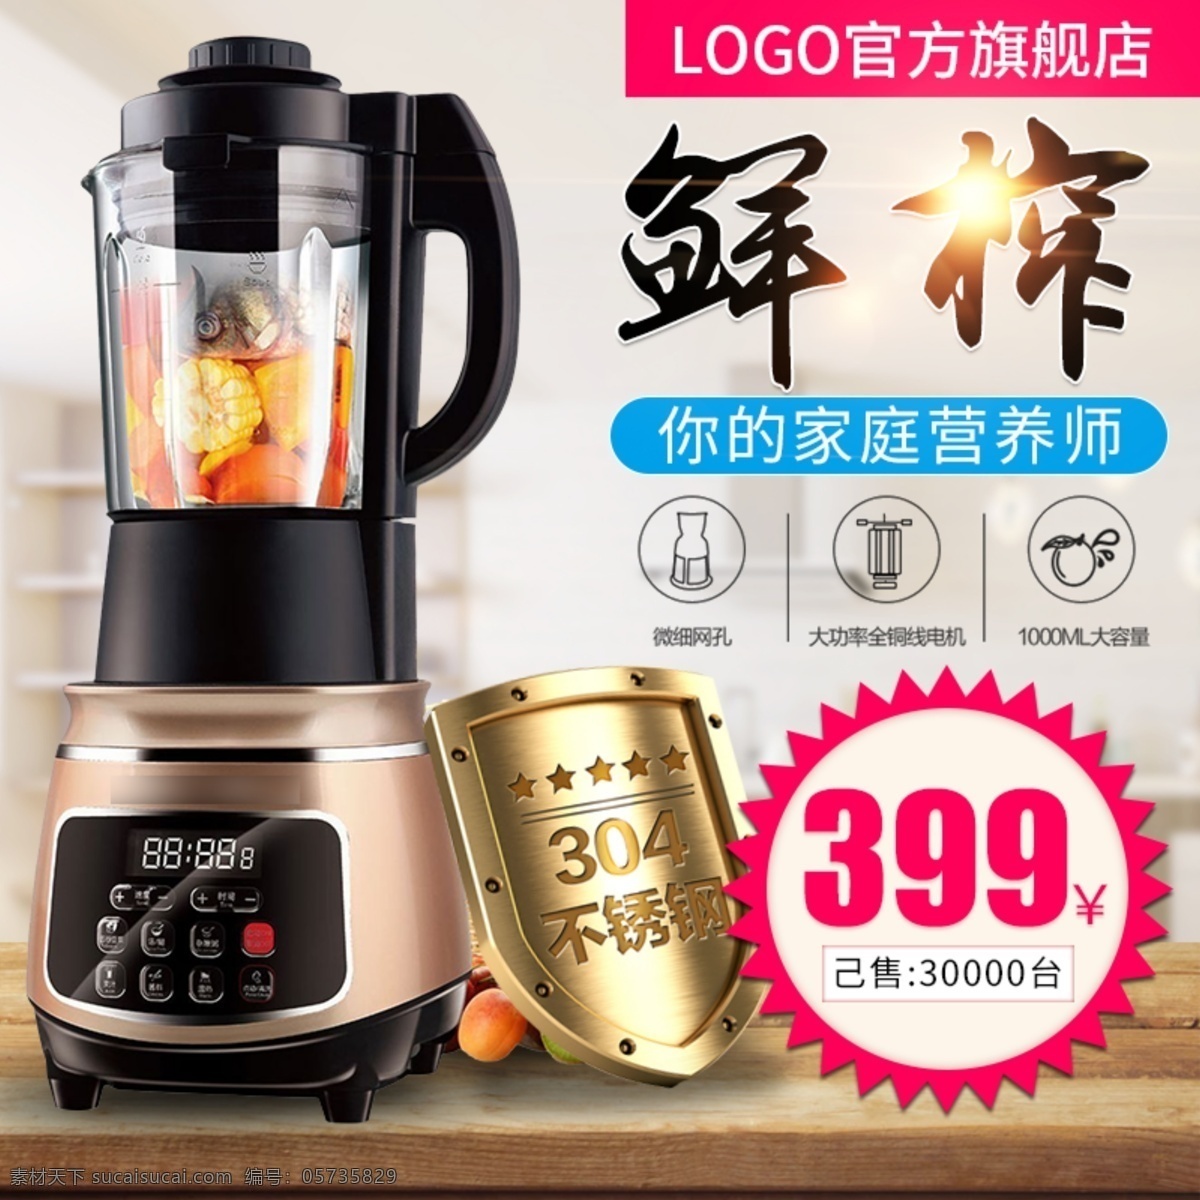 电商 淘宝 天猫 榨汁机 促销 推广 主 图 广告 主图 金色盾牌 木桌